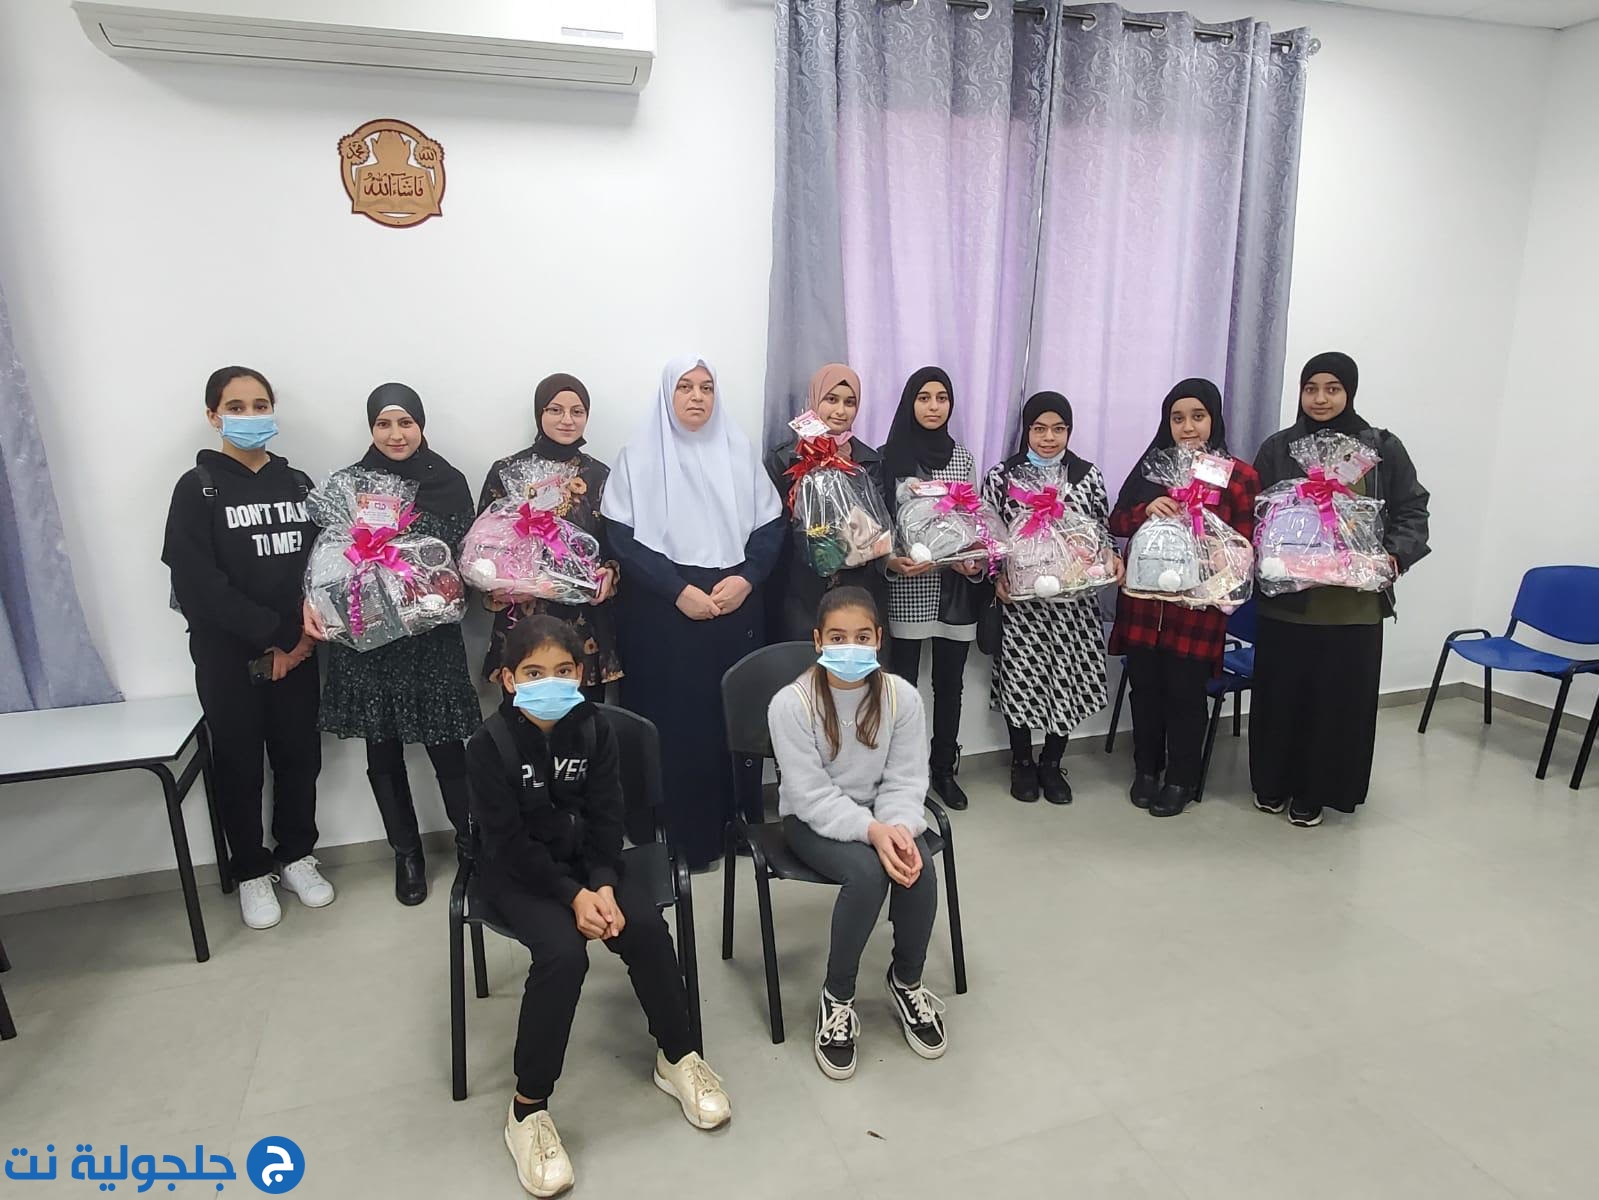 دار القرأن الكريم في جلجولية تكرم طالباتها بإرتدائهن الحجاب